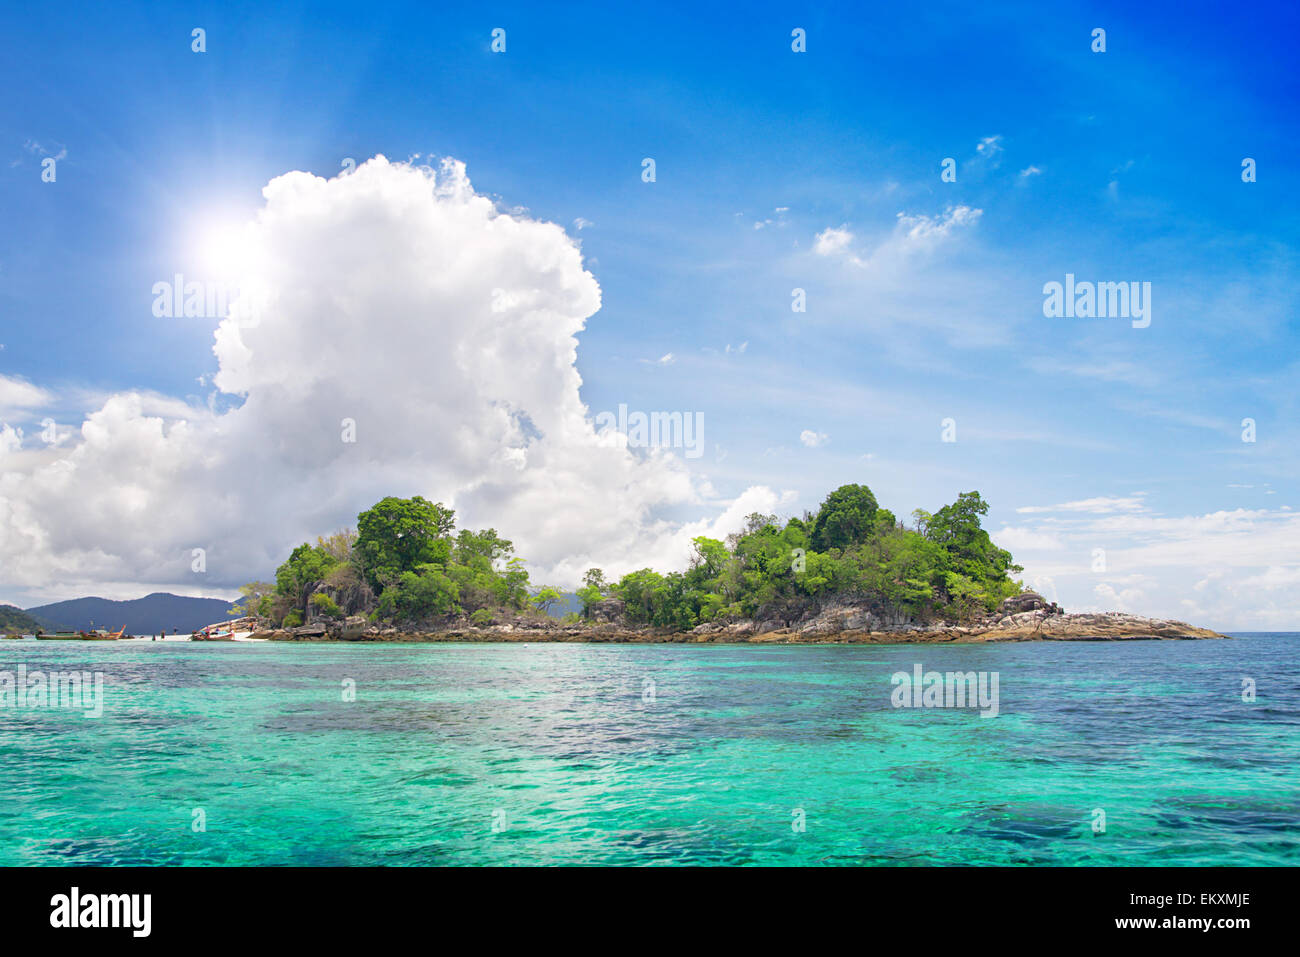 island in beautiful tropical sea Stock Photo - Alamy